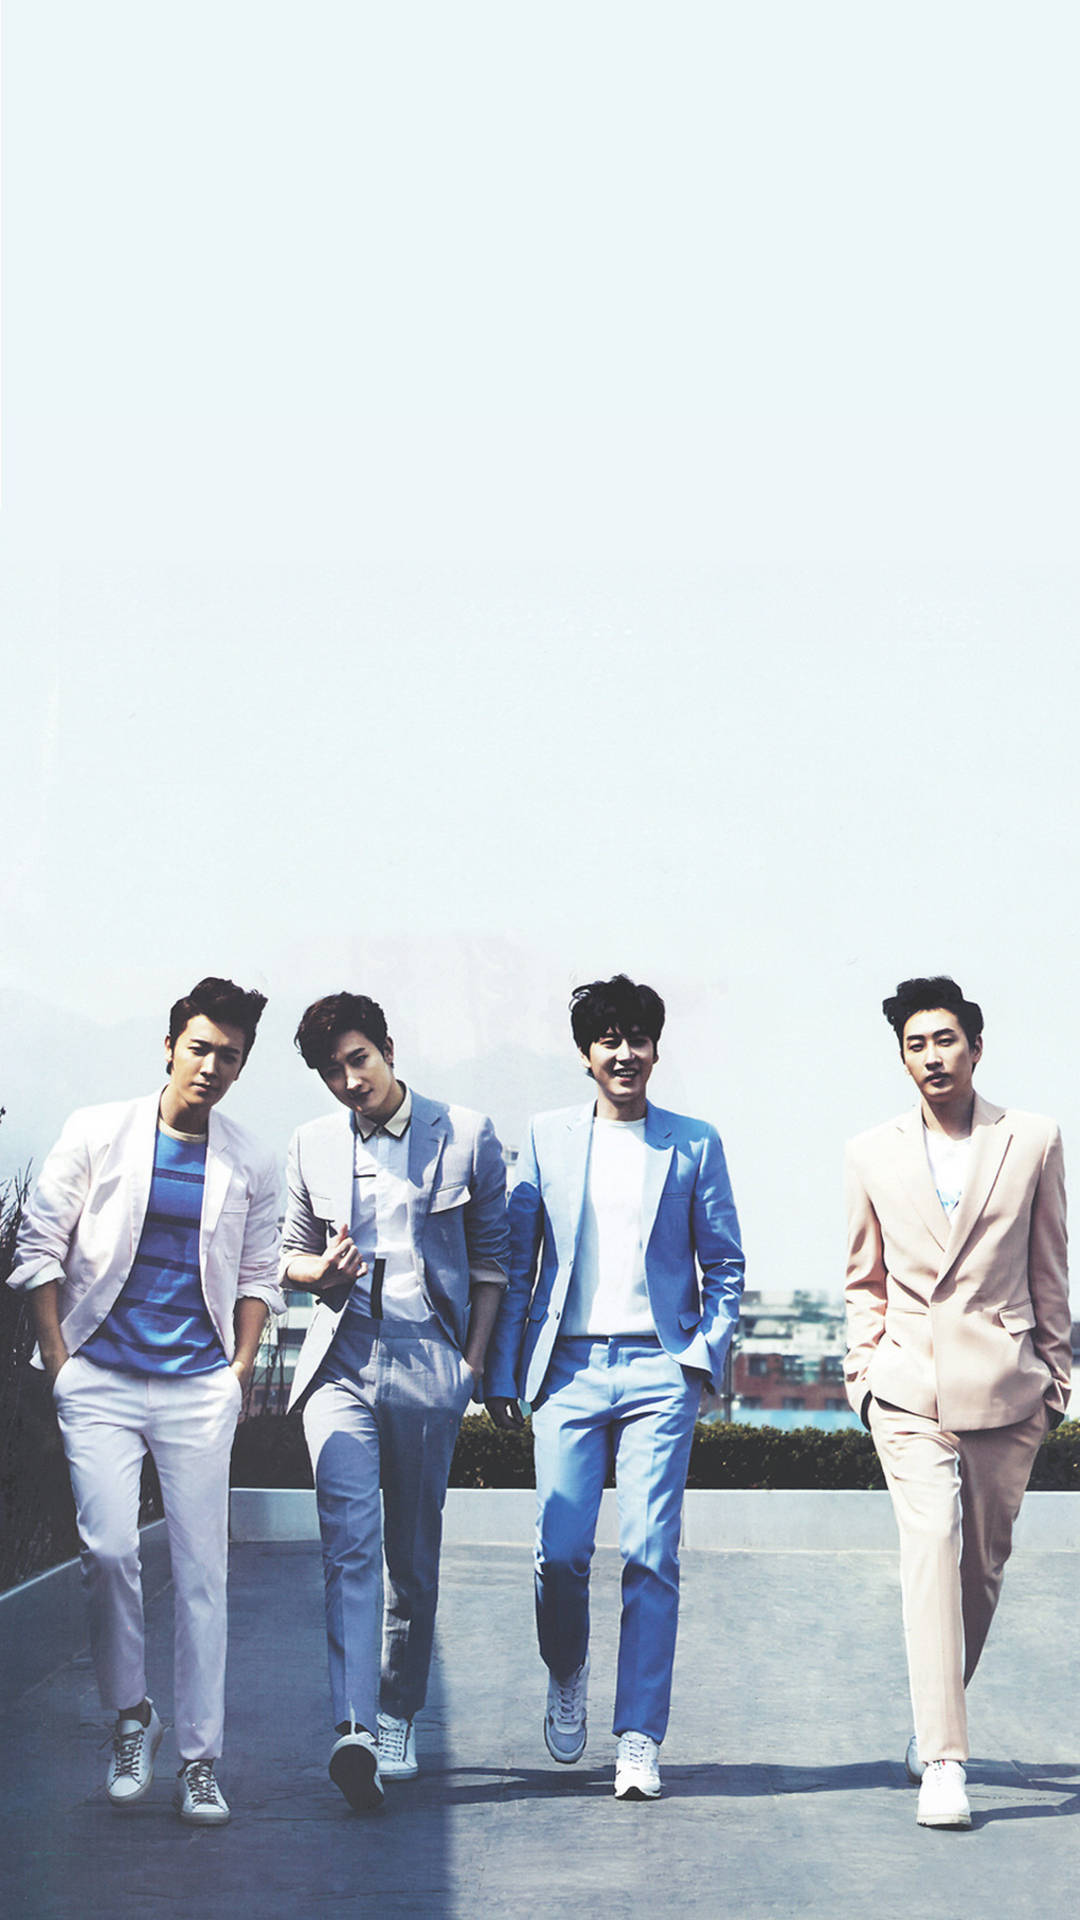 Fire Medlemmer af Super Junior på væggen Wallpaper